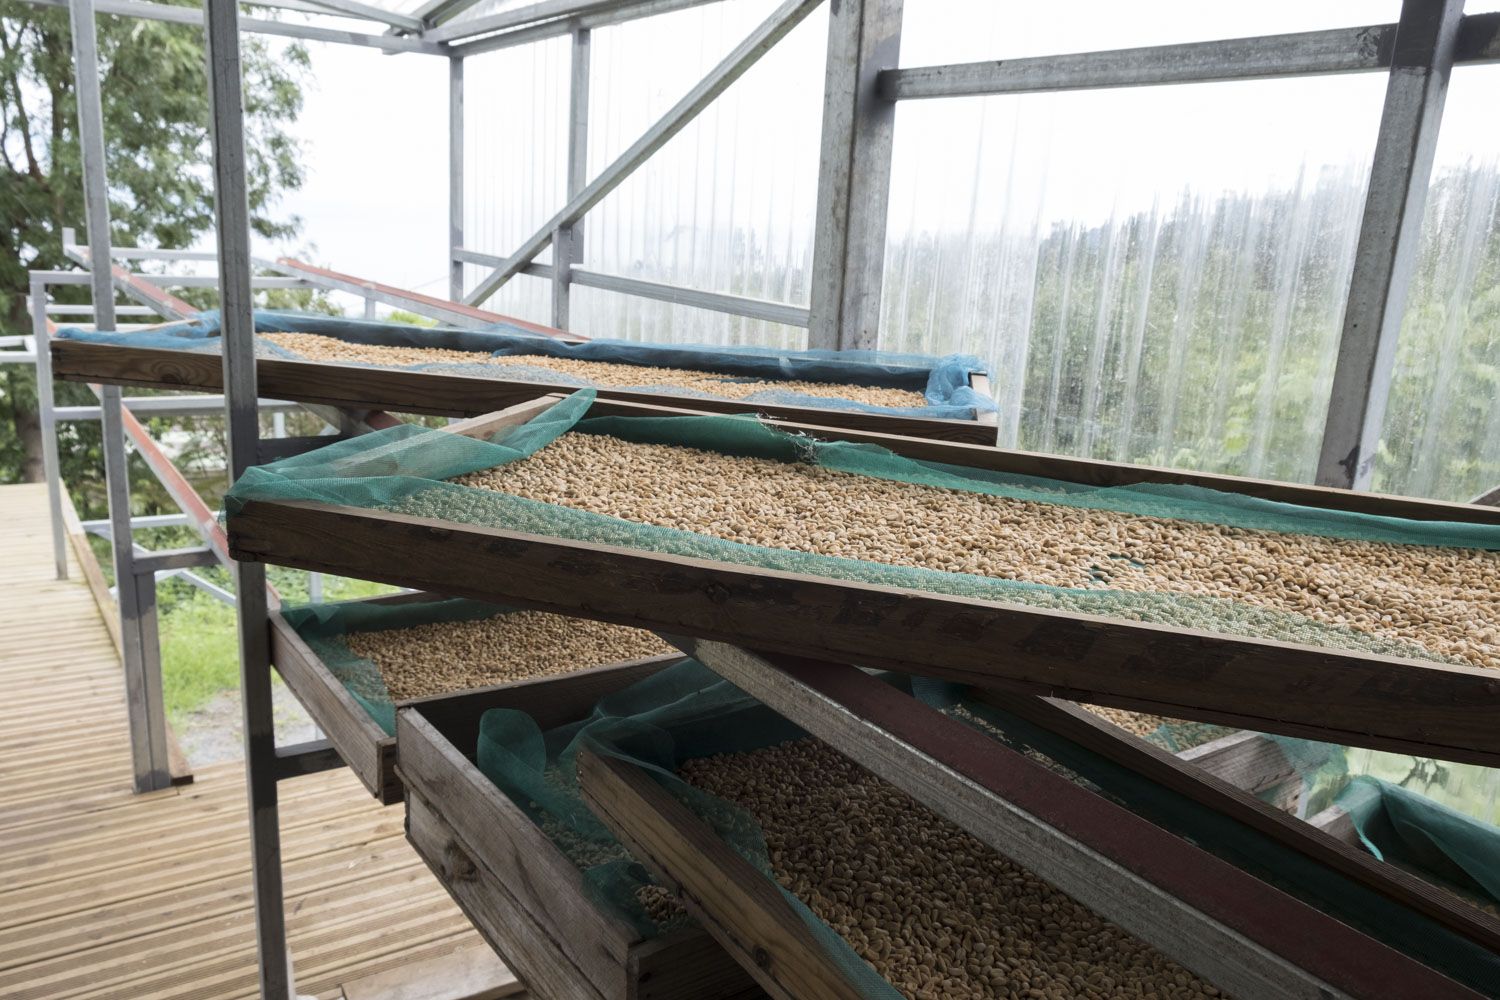 Les grains de café sont entreposés dehors et au sec pour sécher.